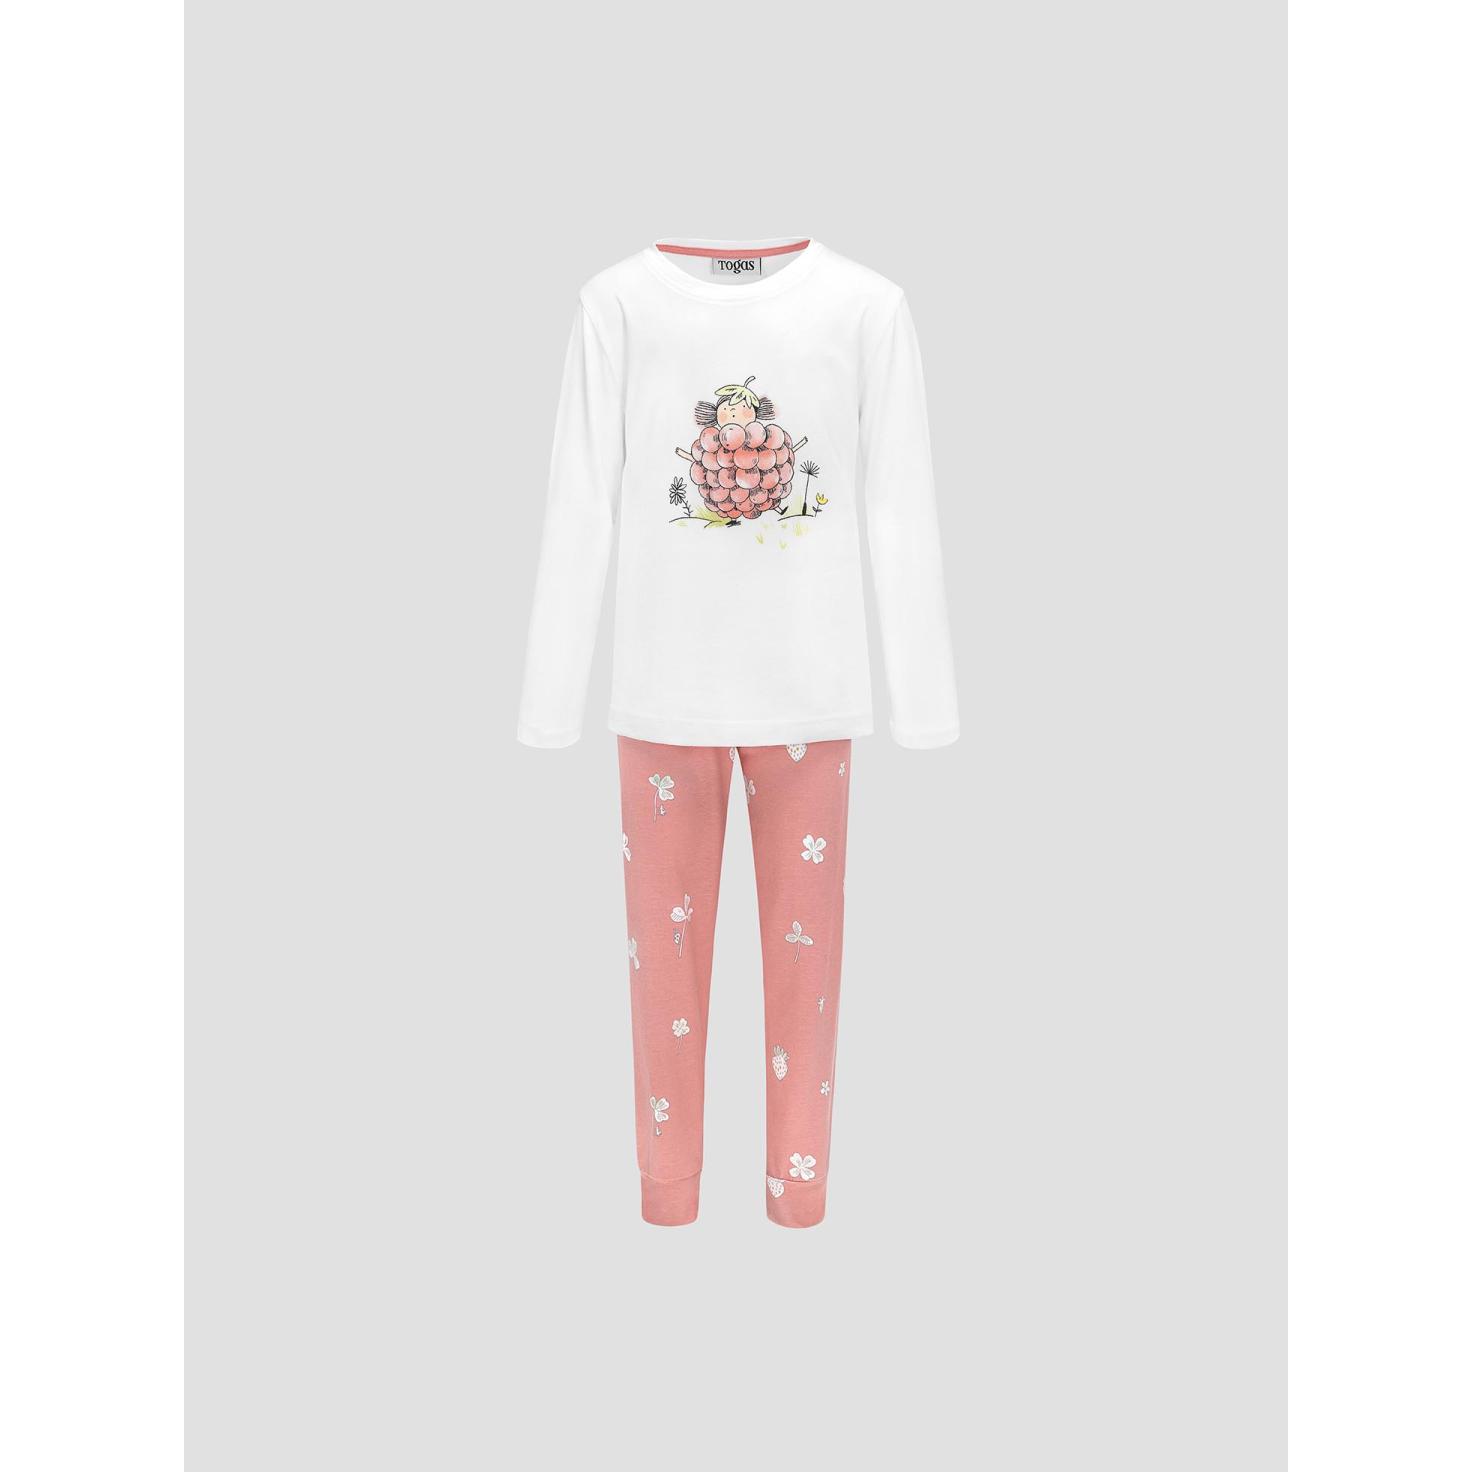 Пижама для девочек Kids by togas Стробби бело-розовый 104-110 см жен пижама с шортами инь янь белый р 50